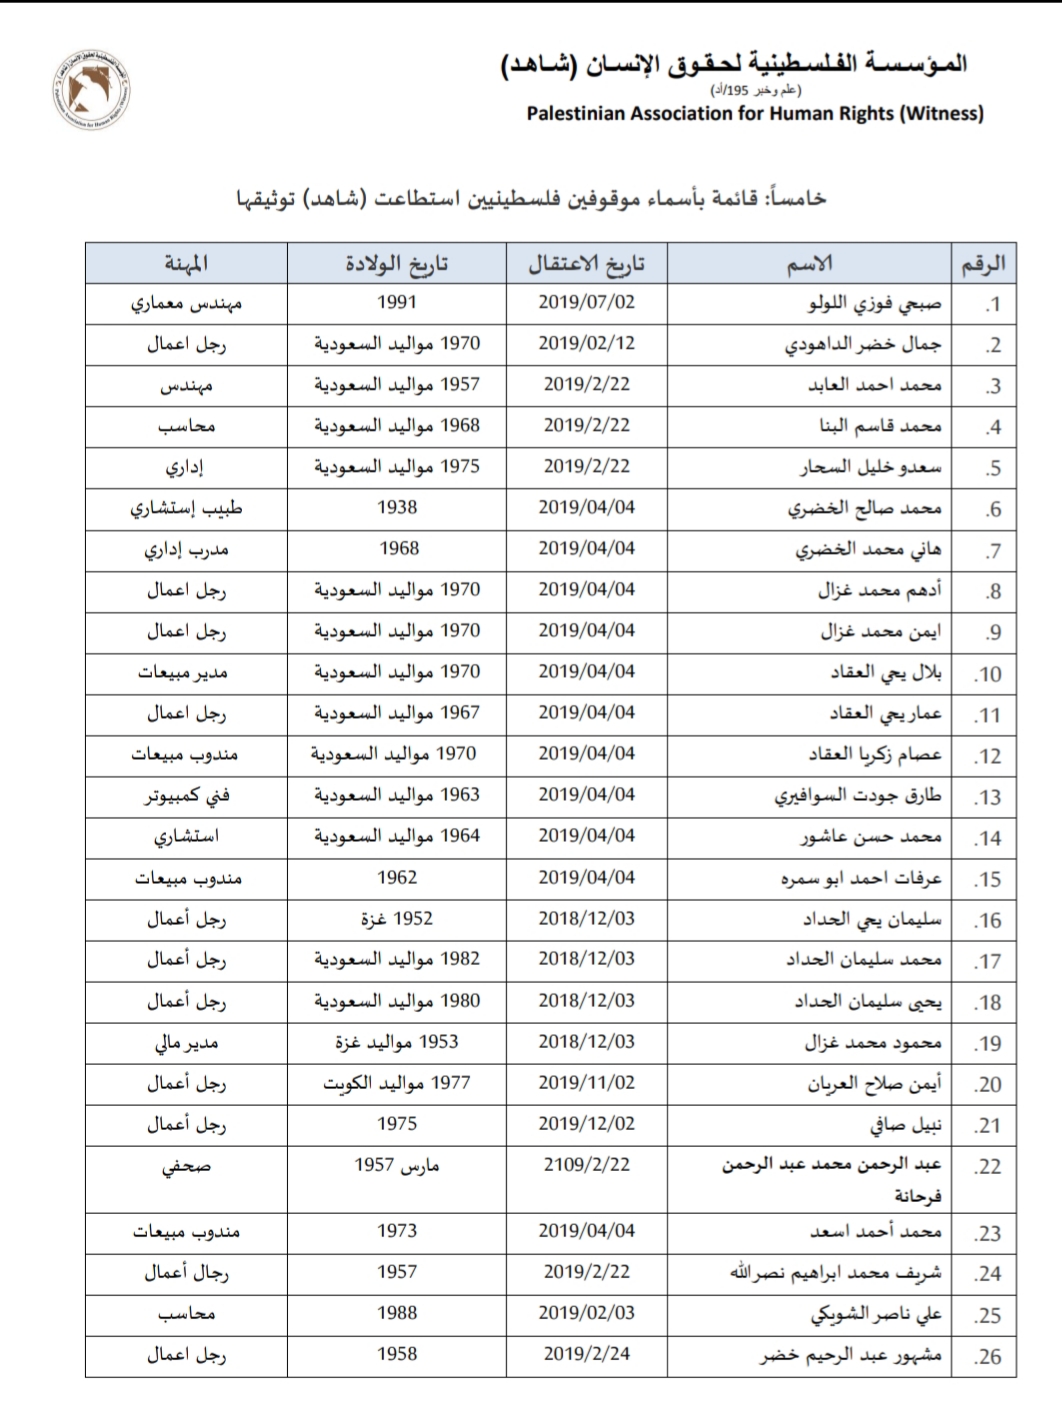 مؤسسة حقوقية تكشف قائمة بأسماء فلسطينيين معتقلين بالسعودية 